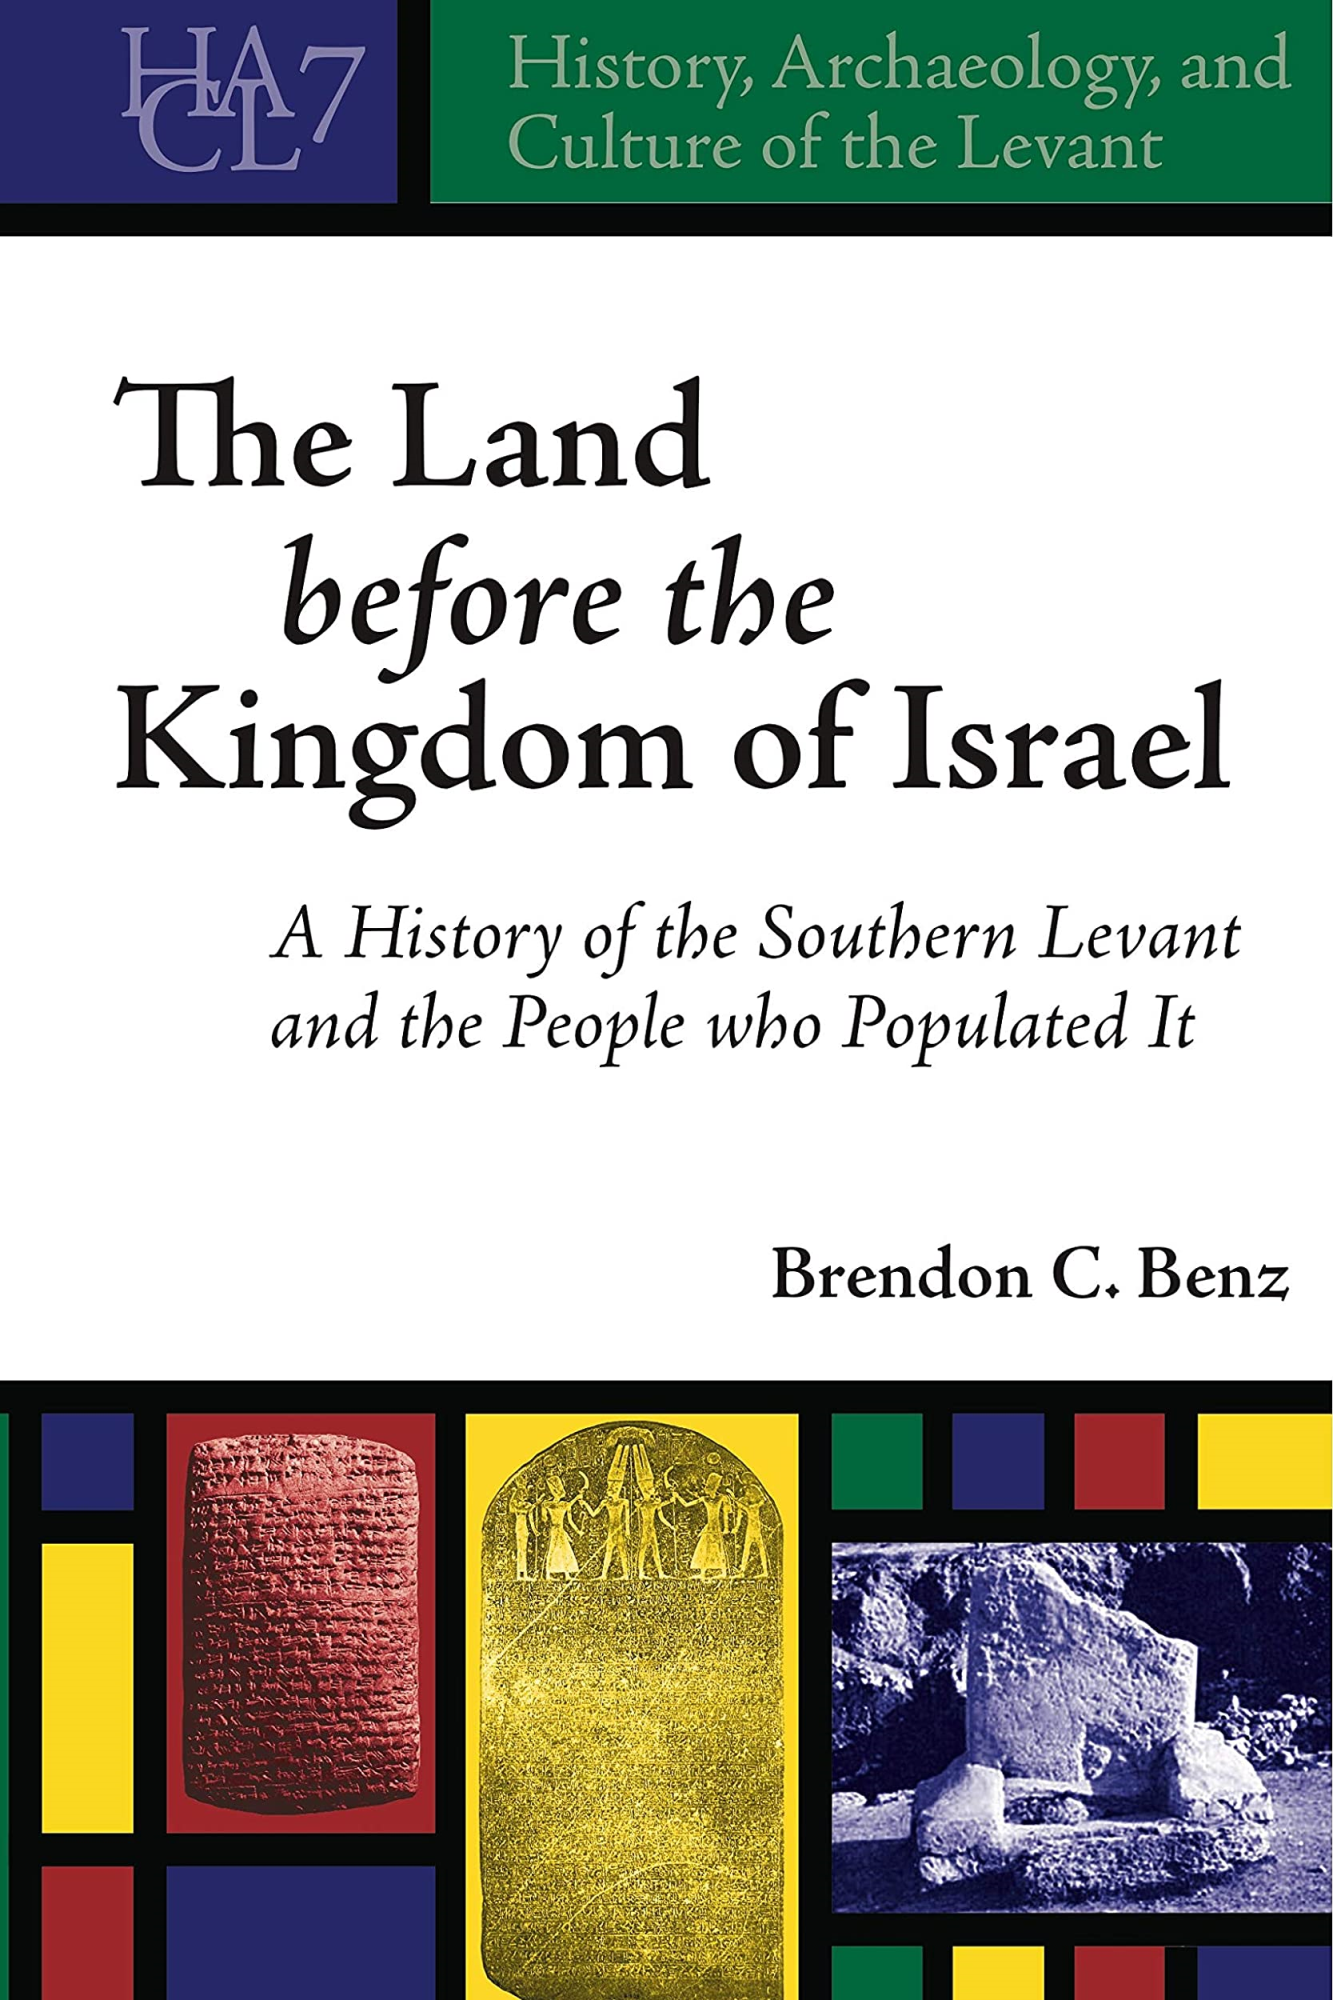 LIbri UK/US Brendon C. Benz - The Land Before The Kingdom Of Israel NUOVO SIGILLATO, EDIZIONE DEL 19/05/2016 SUBITO DISPONIBILE